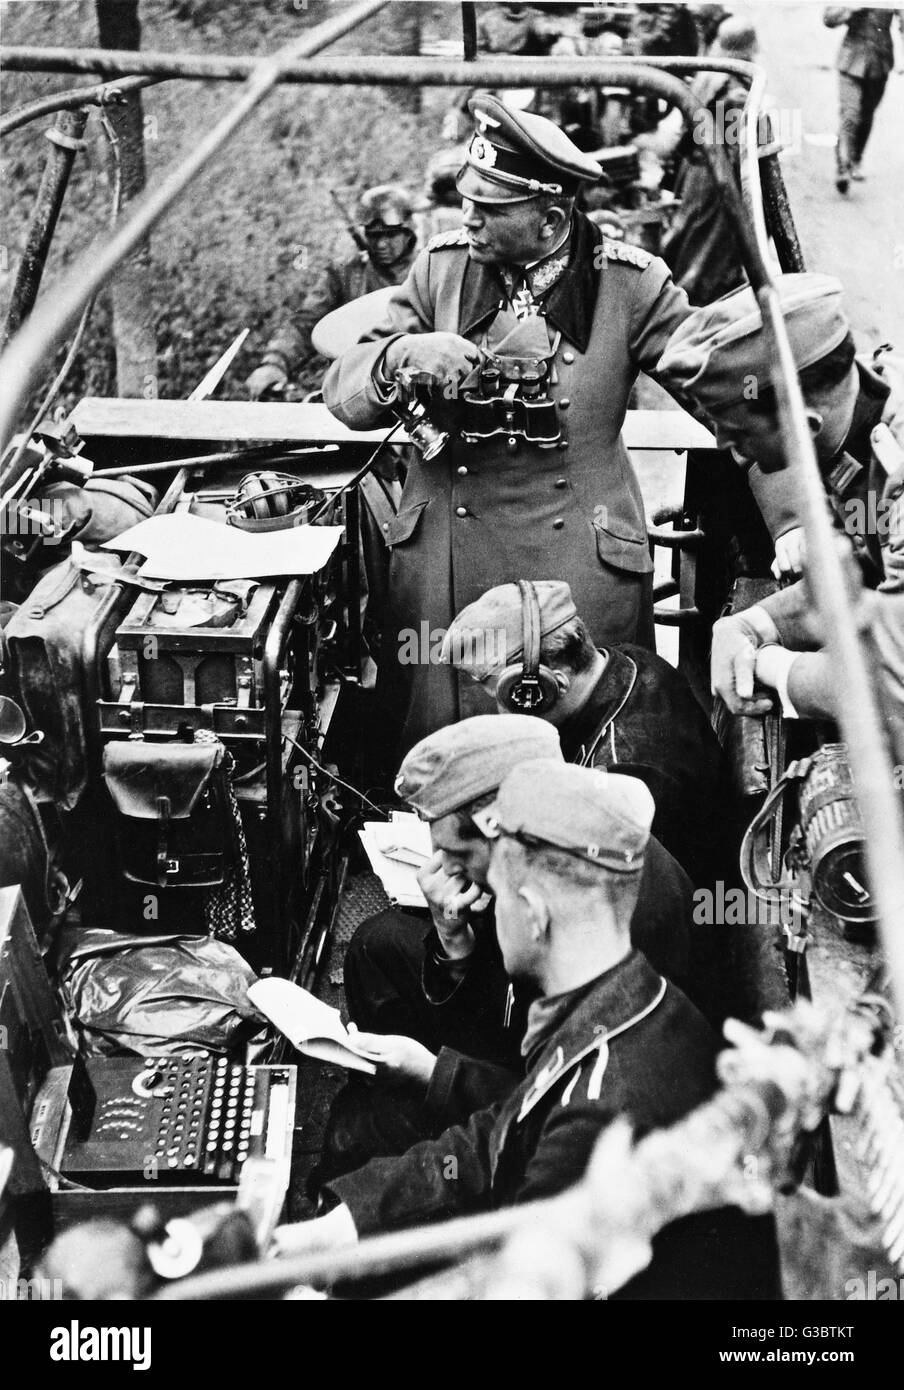 Heinz Guderian général dans sa demi-piste blindé véhicule de commandement. À la partie inférieure gauche de la photo est son codage Enigma machine. Date : 1941 Banque D'Images